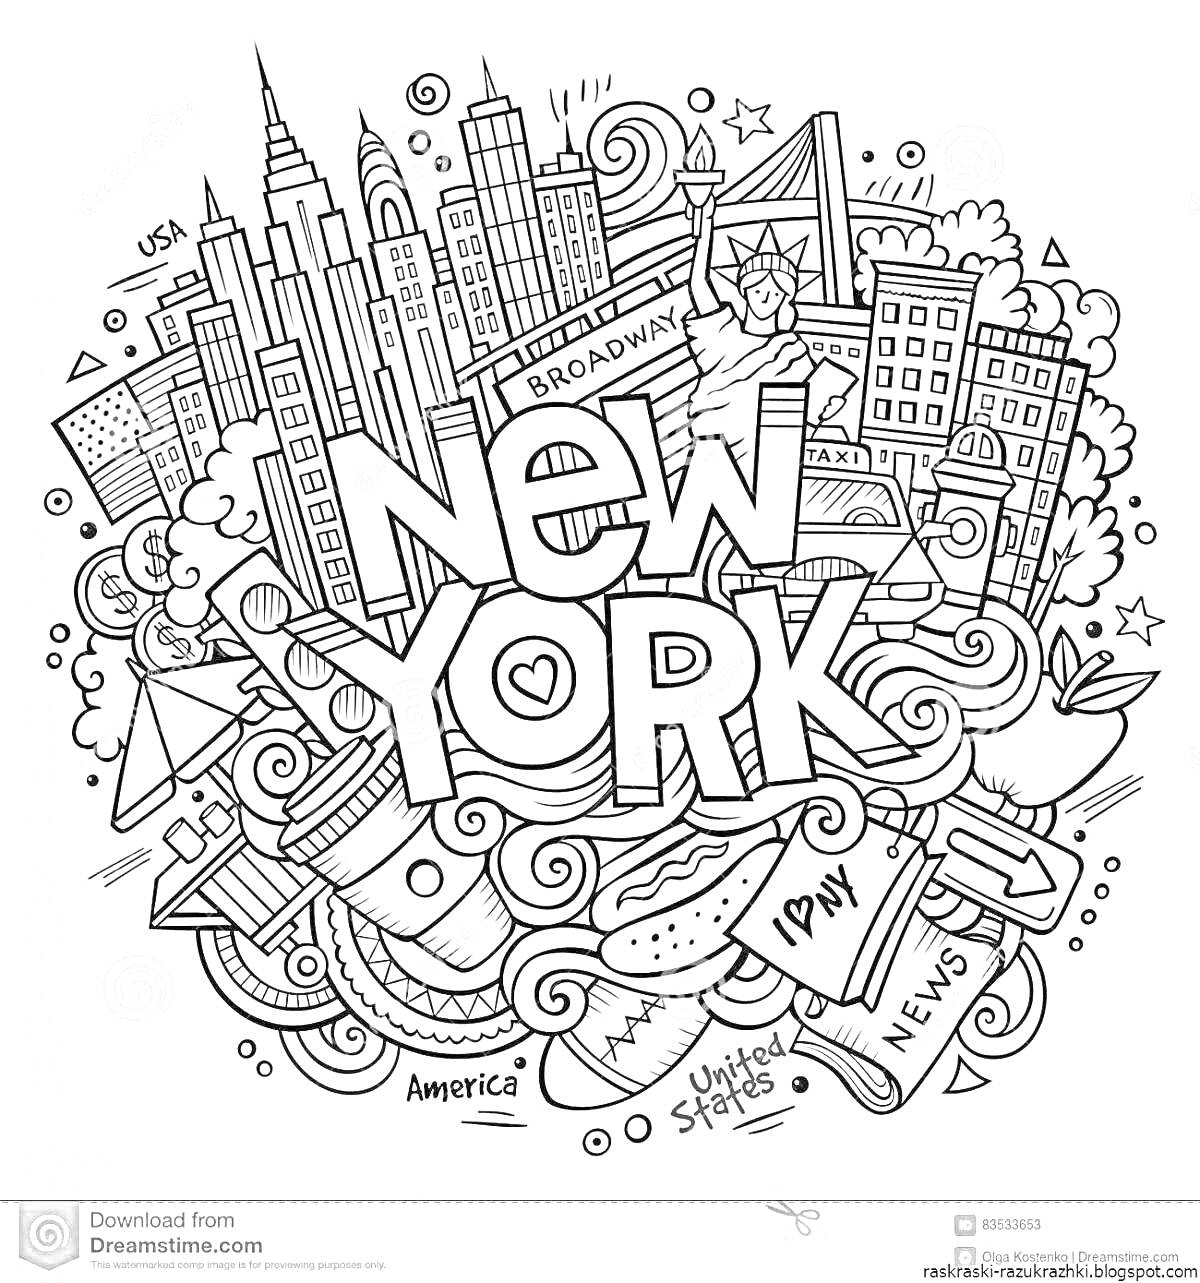 На раскраске изображено: Нью-Йорк, Статуя Свободы, Газета, Такси, Пончик, Бейсболка, Флаг, Фейерверки, Америка